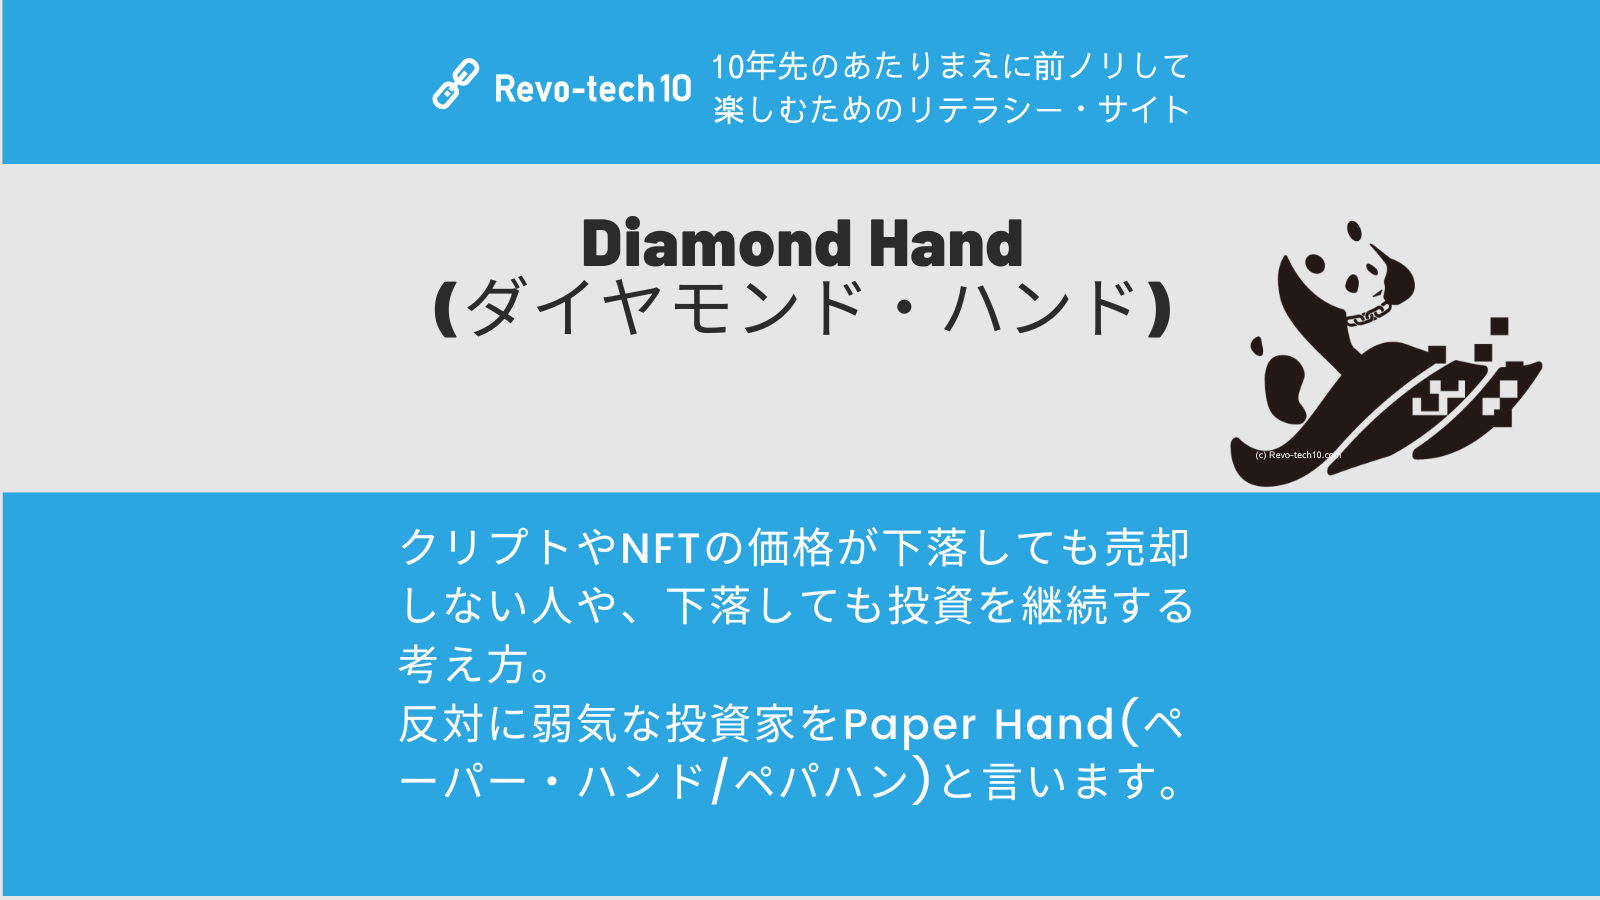 0084_Diamond Hand (ダイヤモンド・ハンド)とは、クリプトやNFTの価格が下落しても売却しない人や、下落しても投資を継続する考え方。